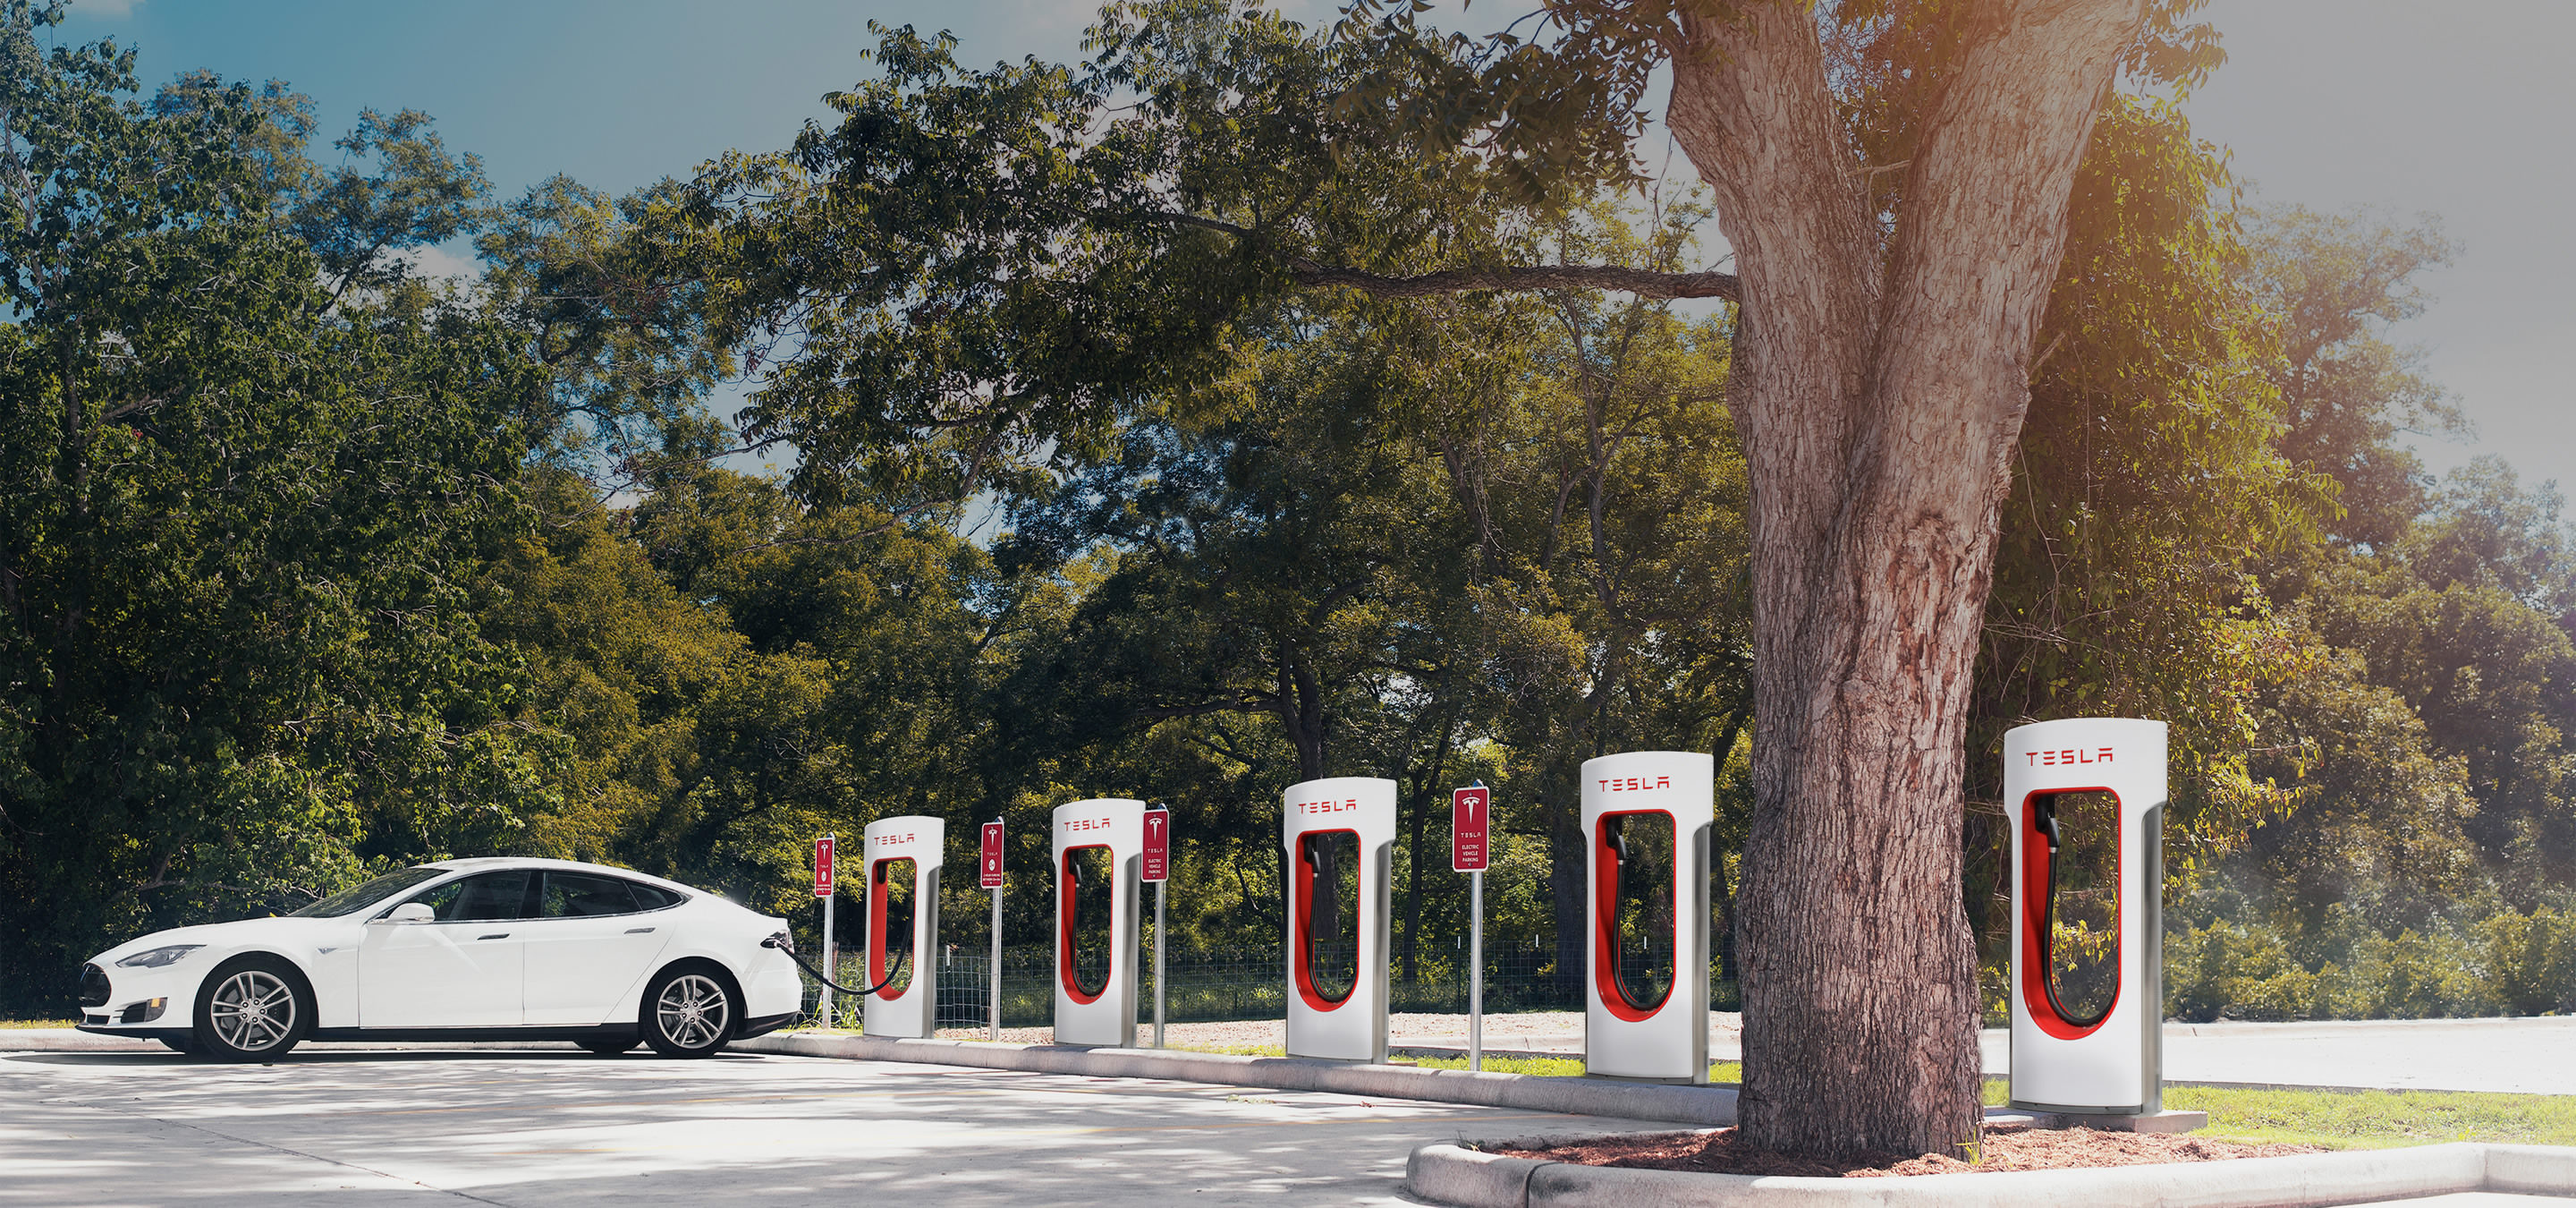 Tesla : l'ouverture des Superchargeurs aux autres voitures électriques démarre aux Pays-Bas